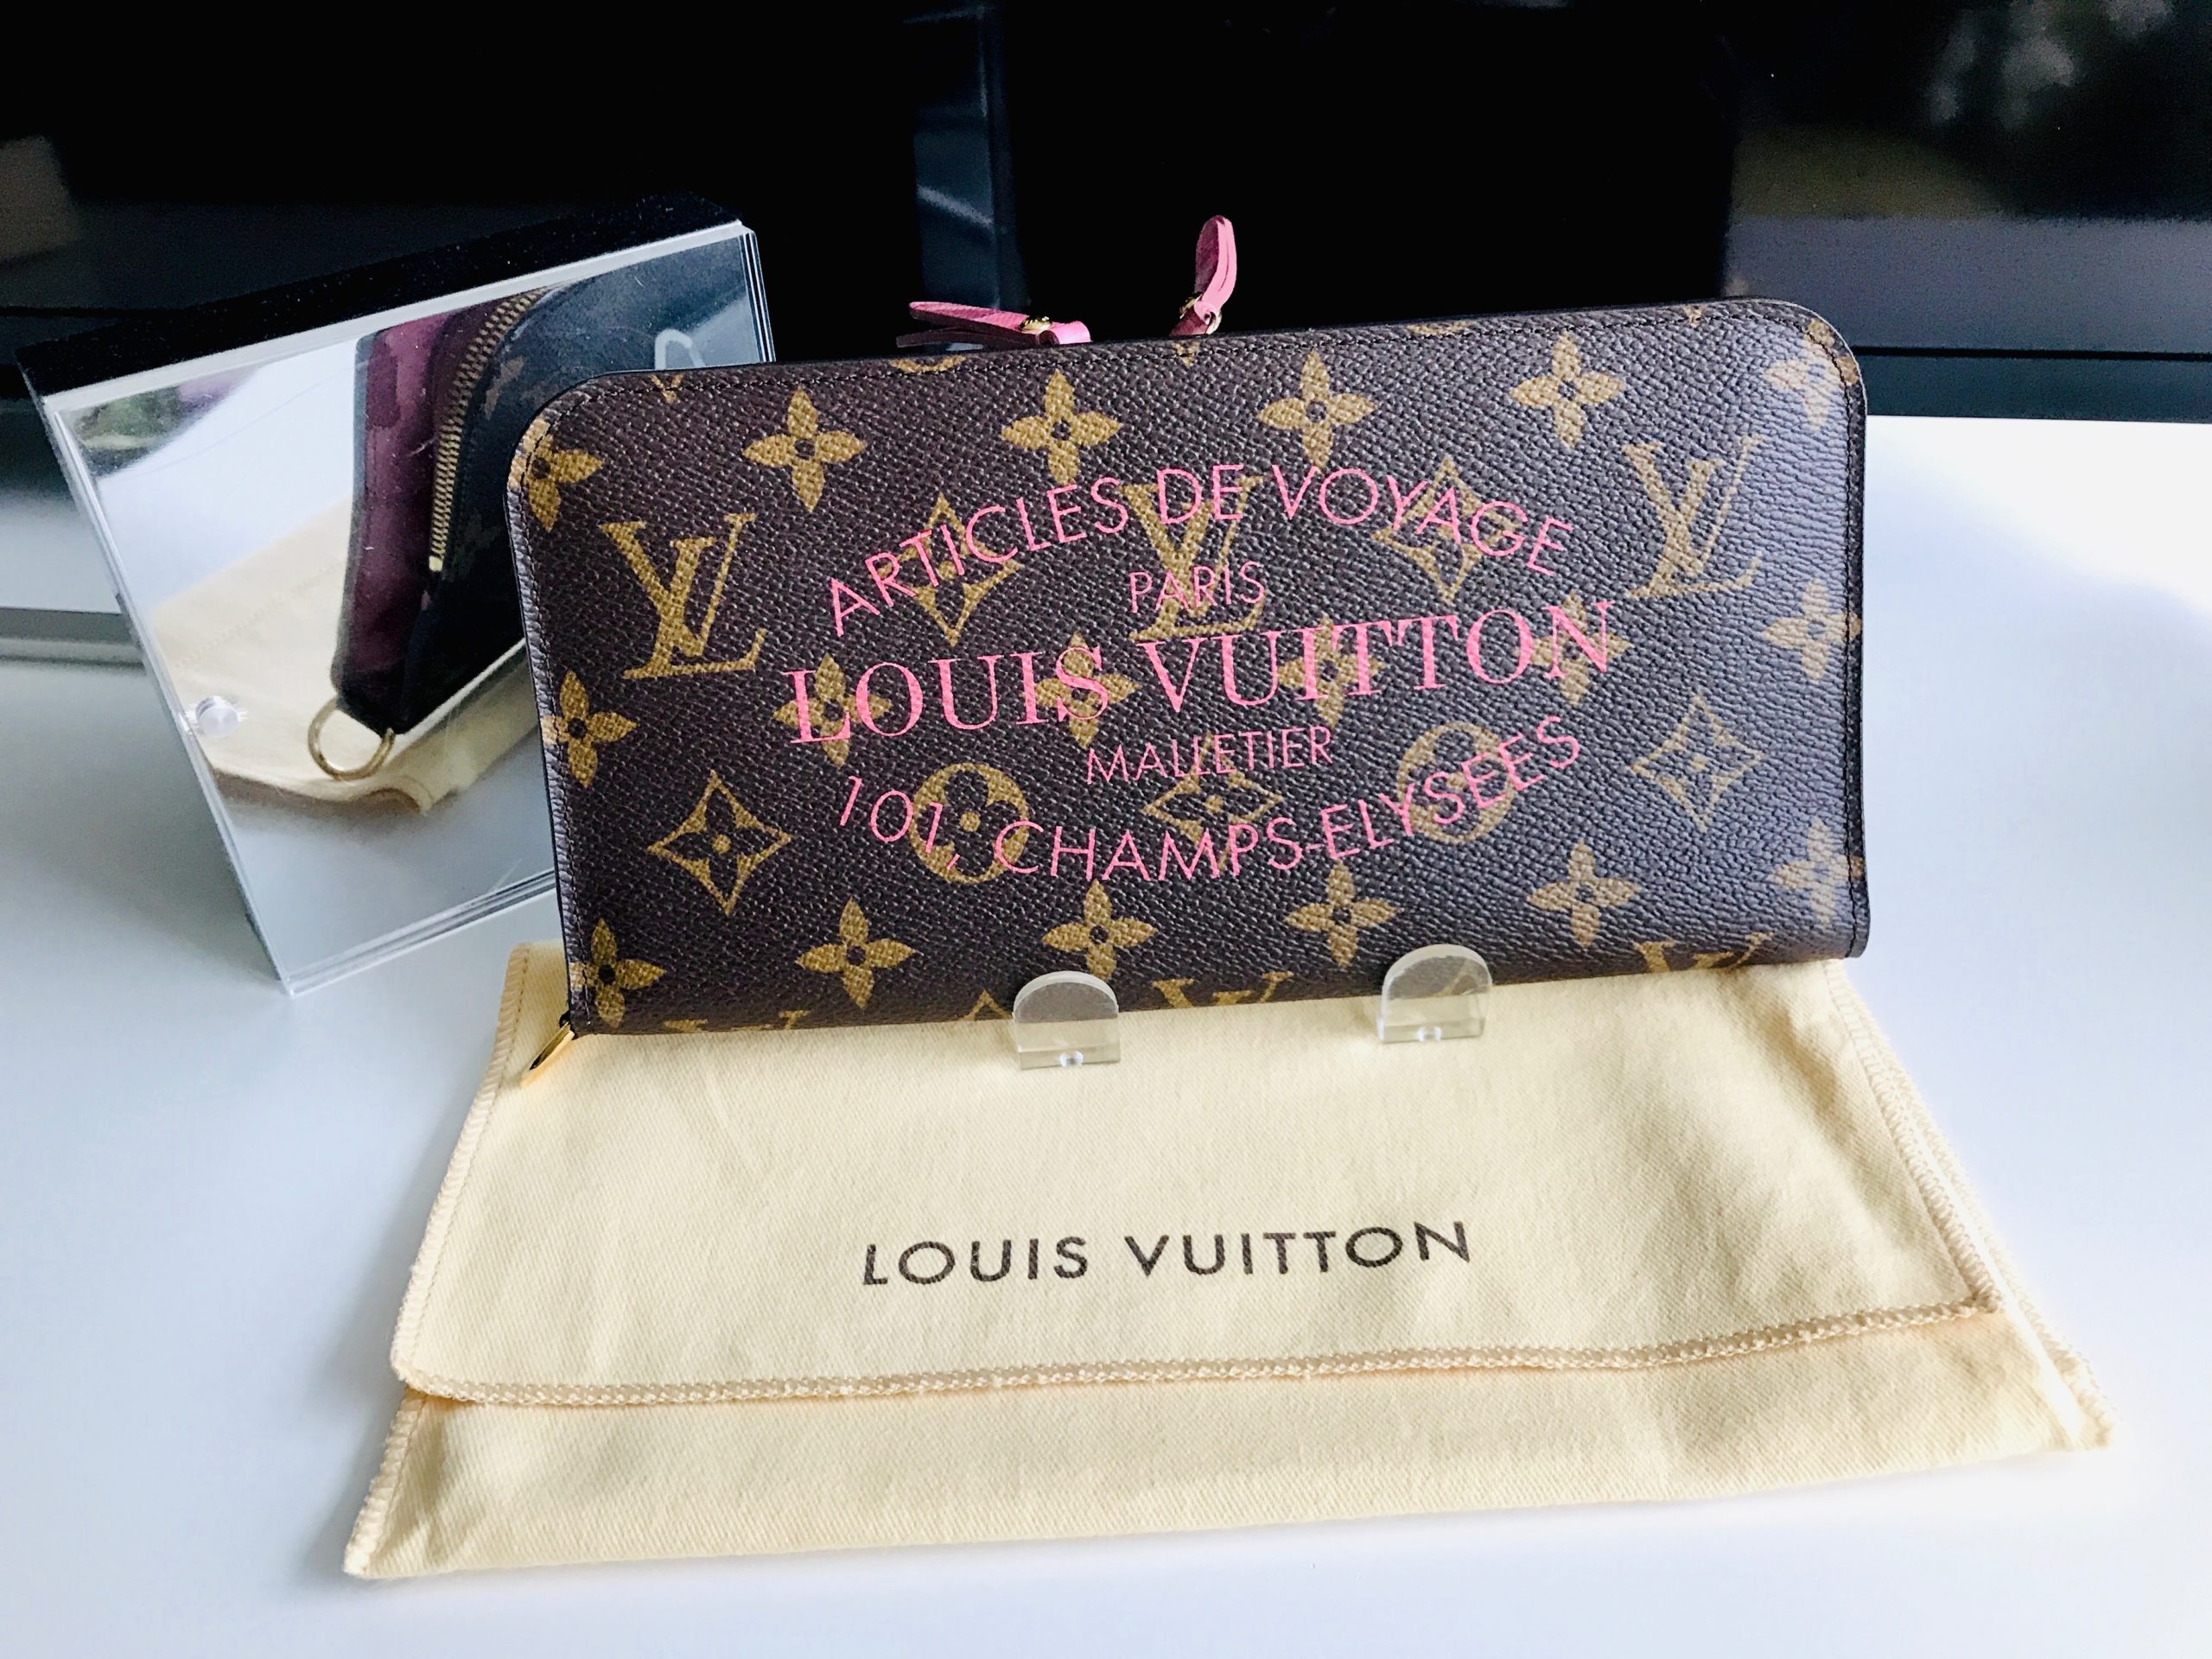 Rosalía conquista a Louis Vuitton